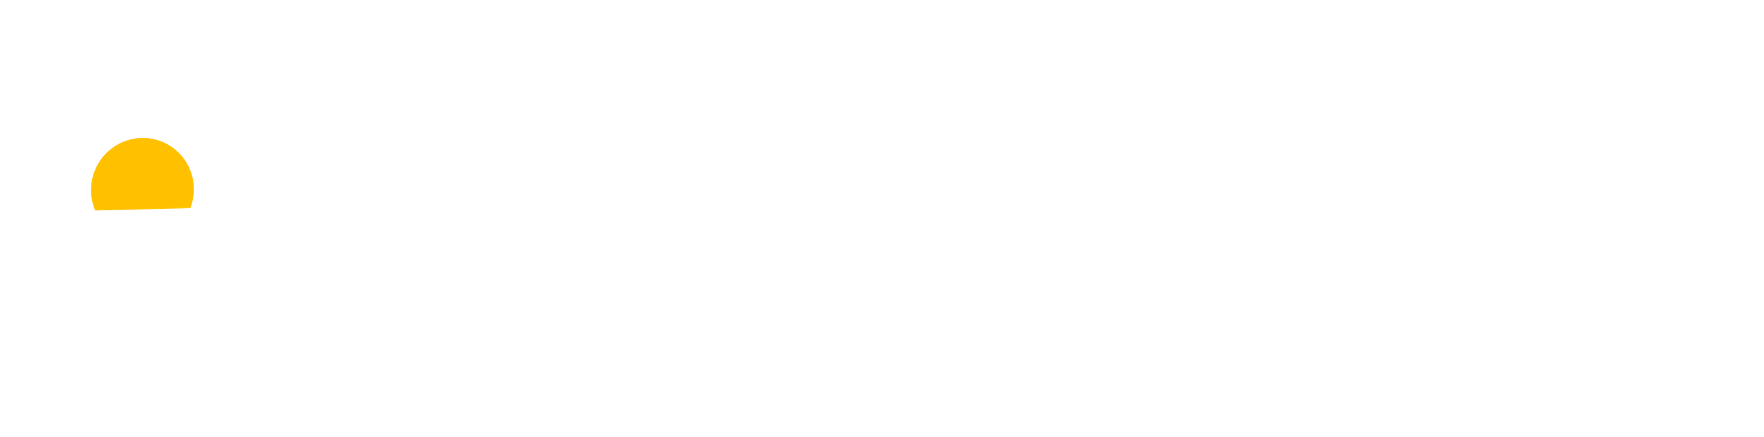 SolarPowerTech